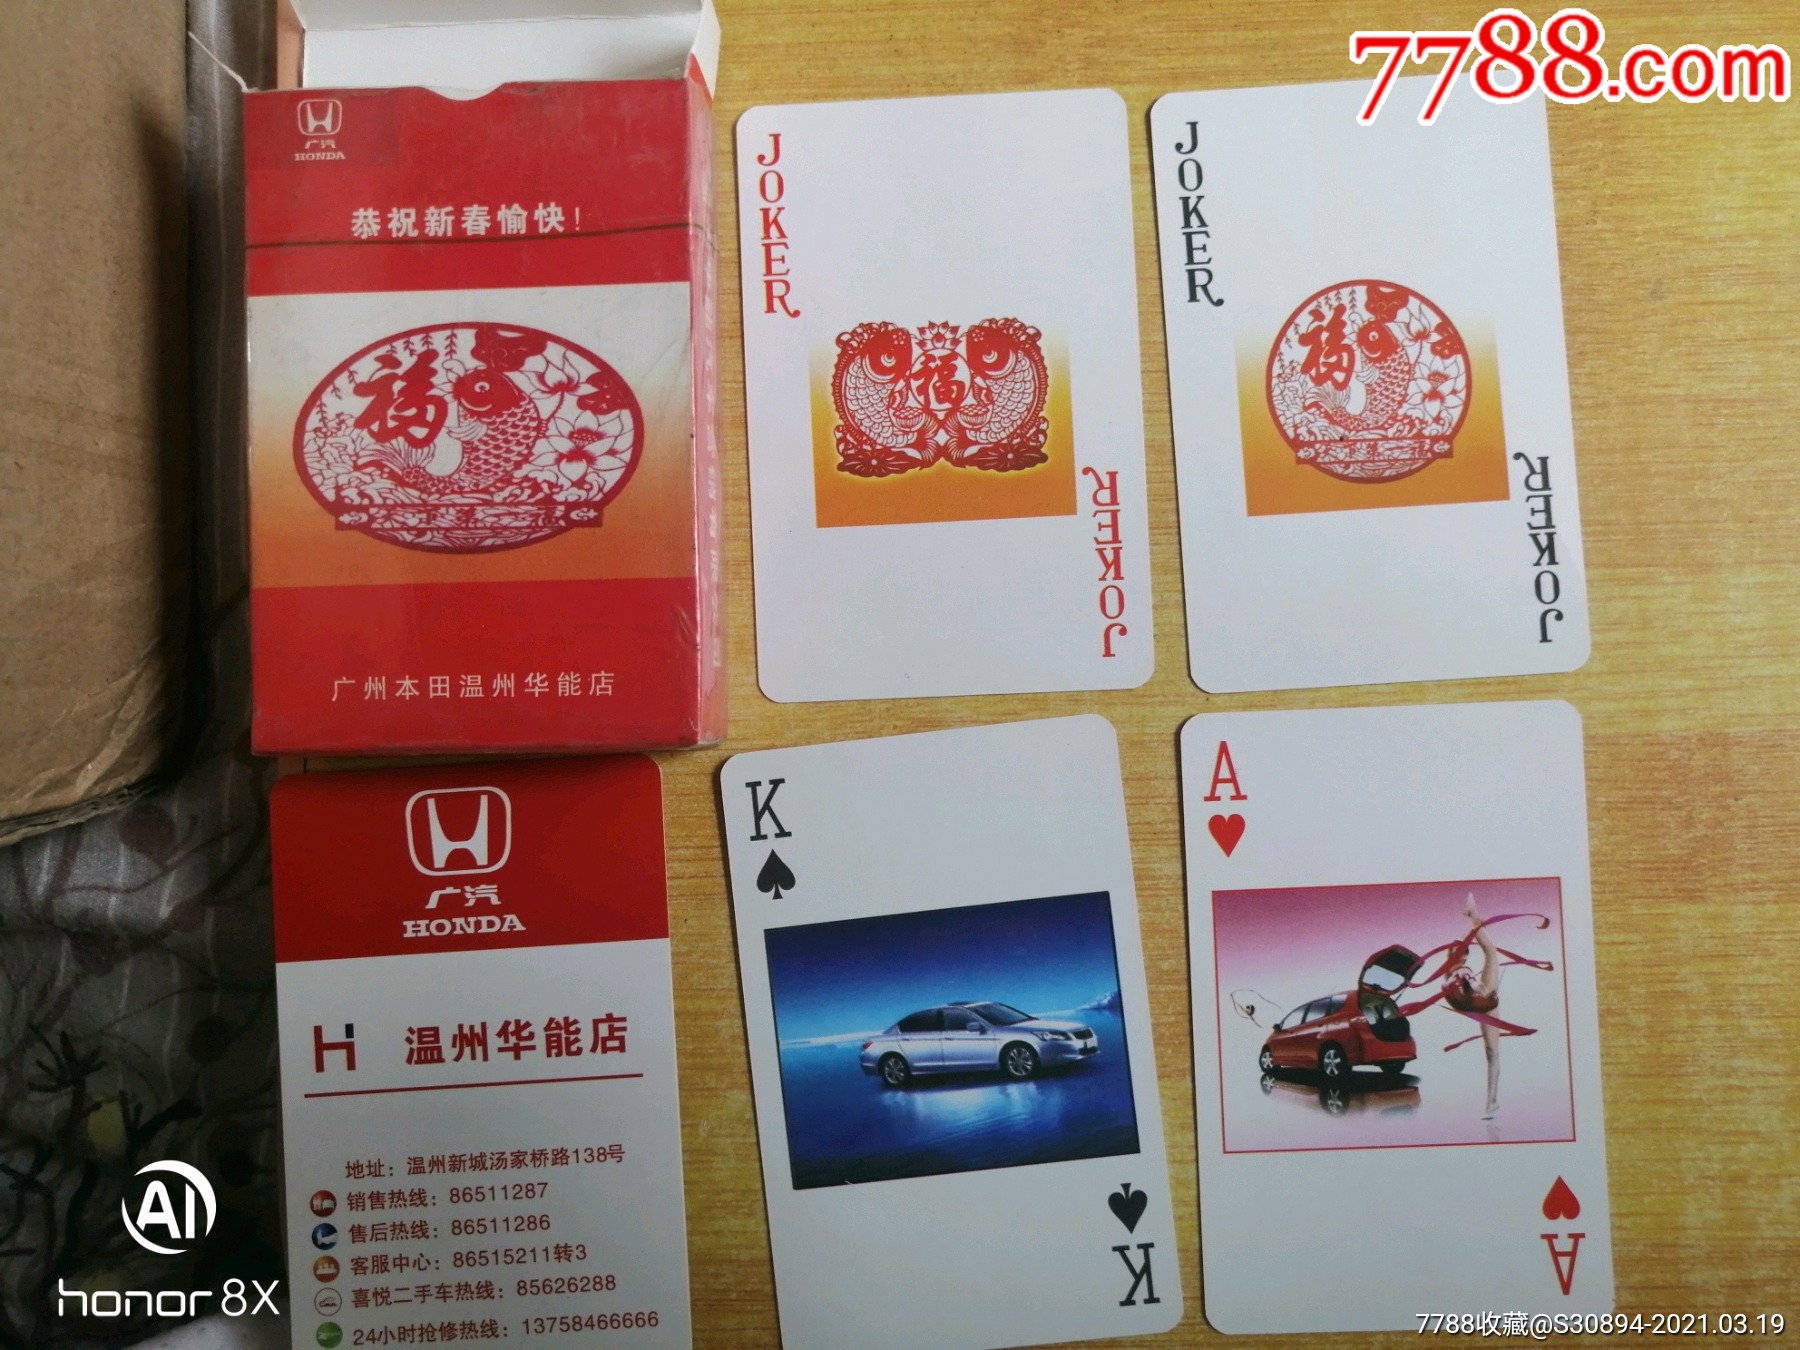 温州32张扑克牌大小图片